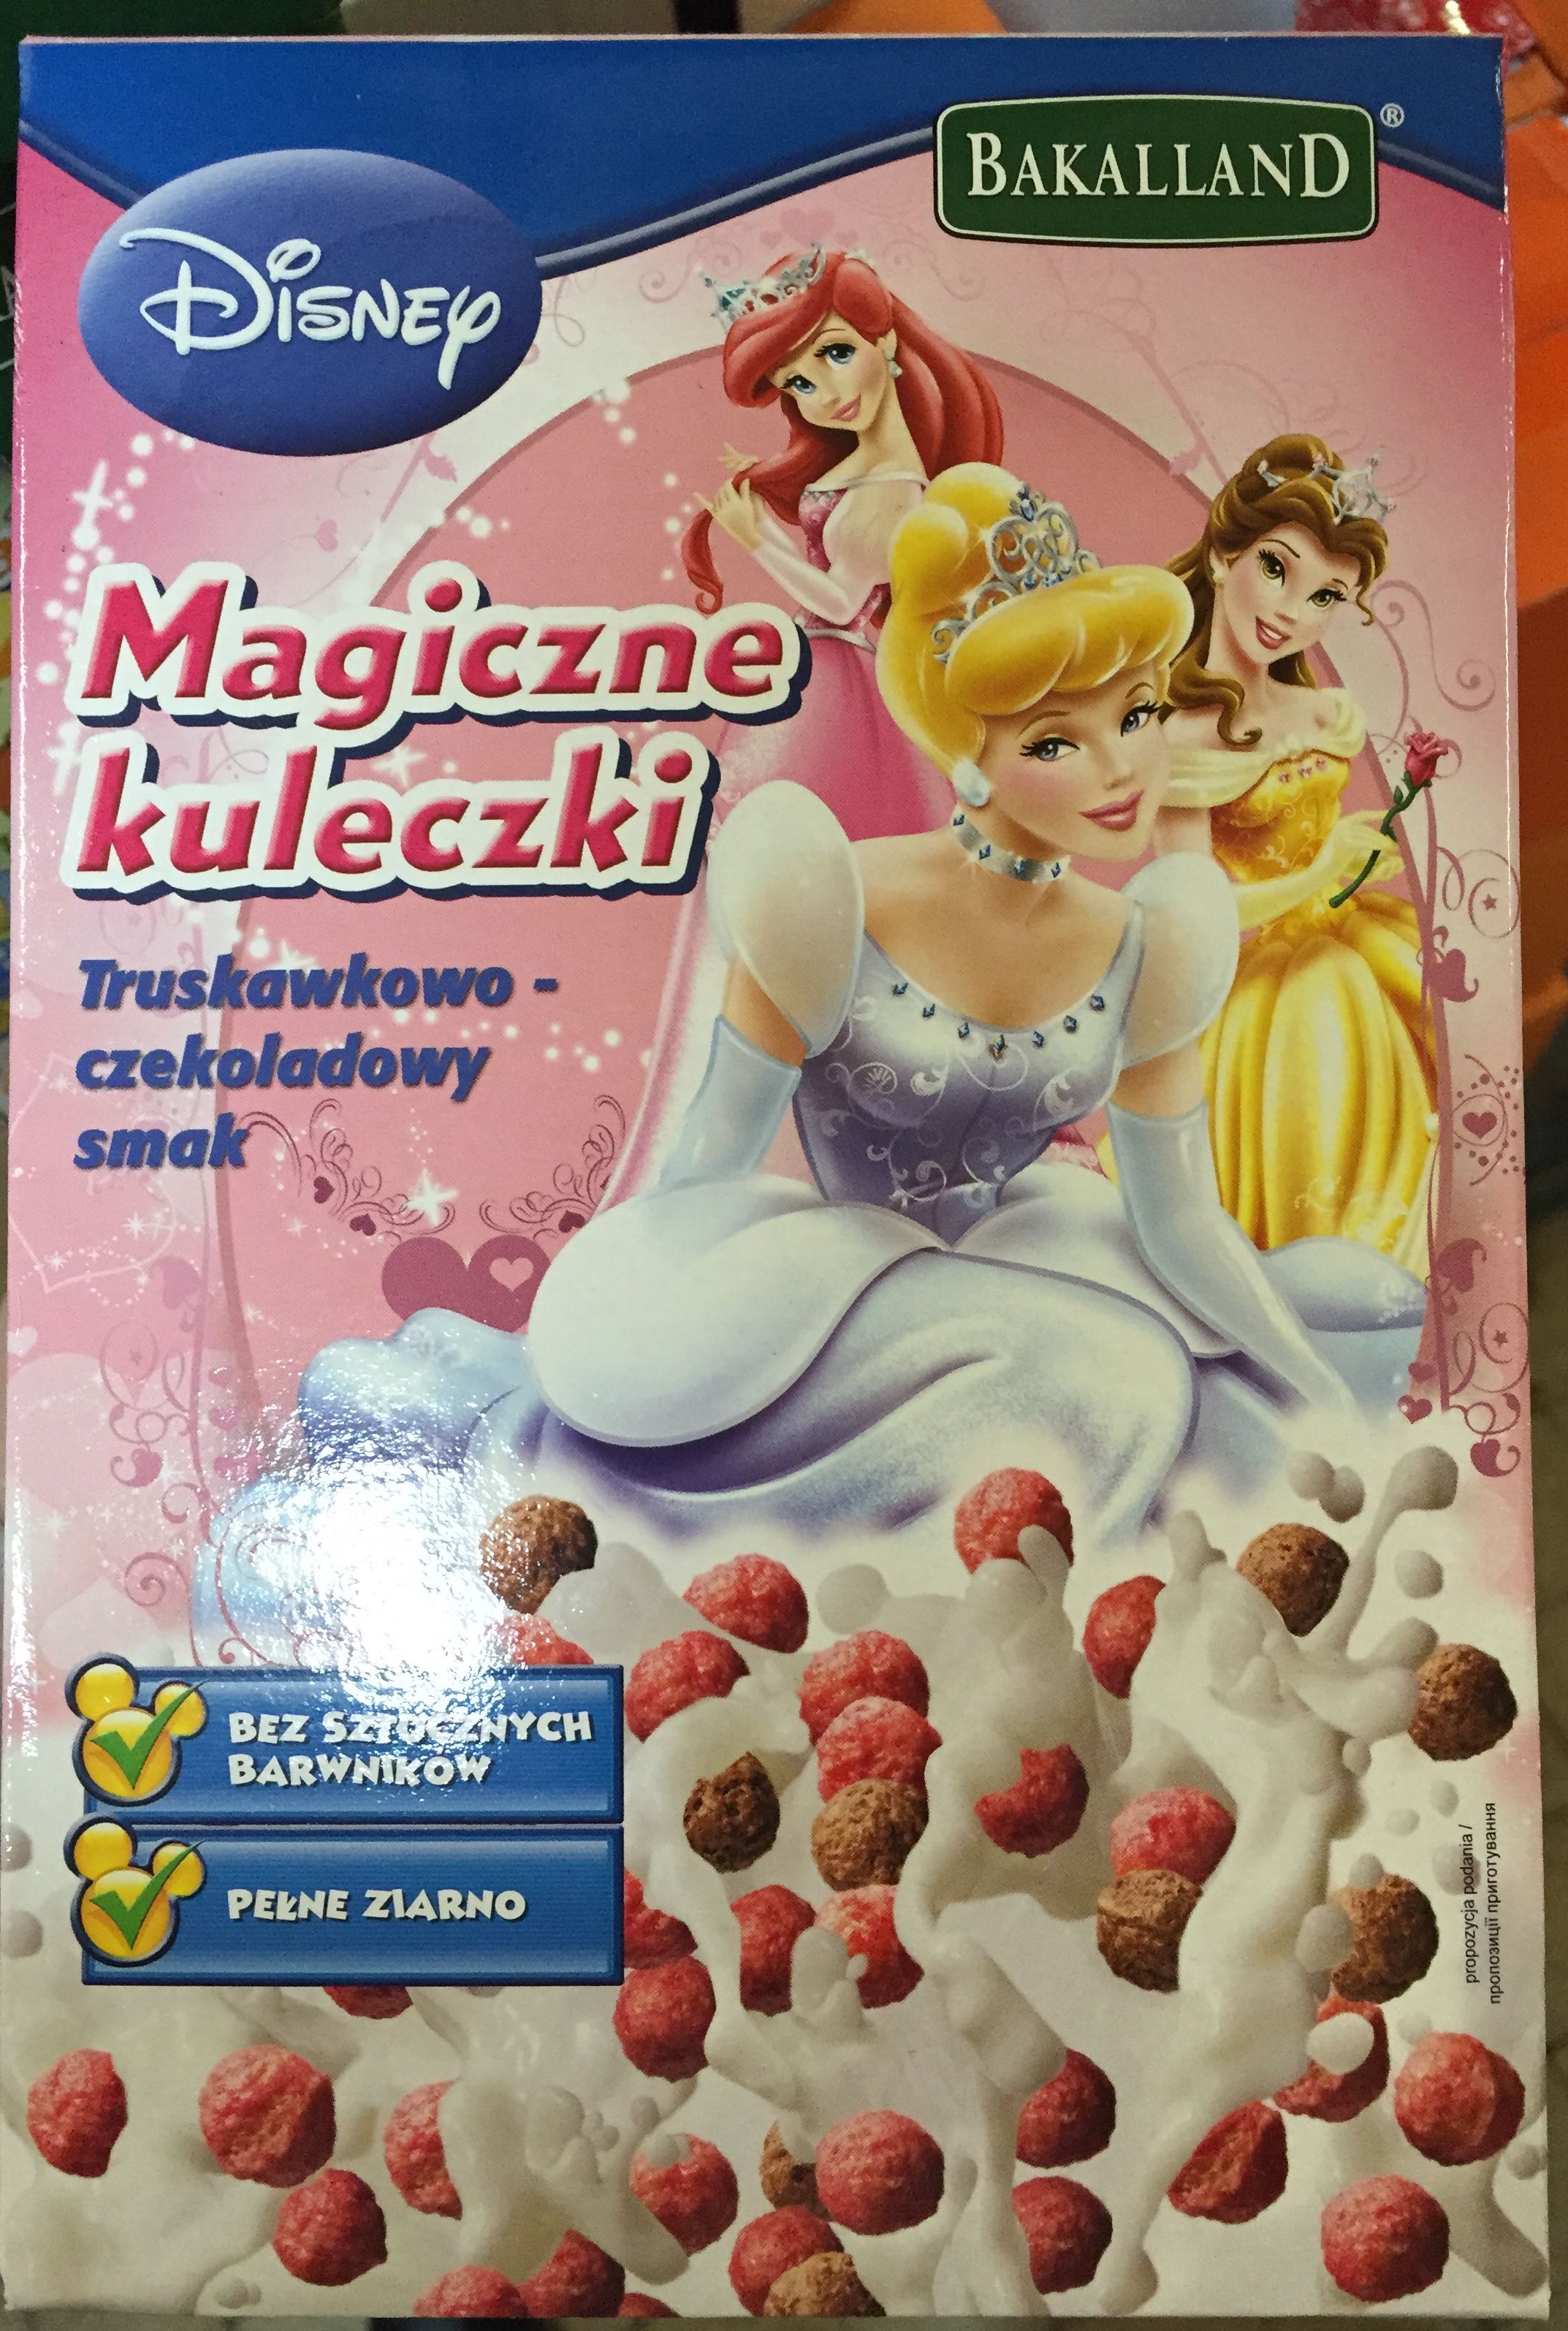 Magiczne kuleczki - Product - pl